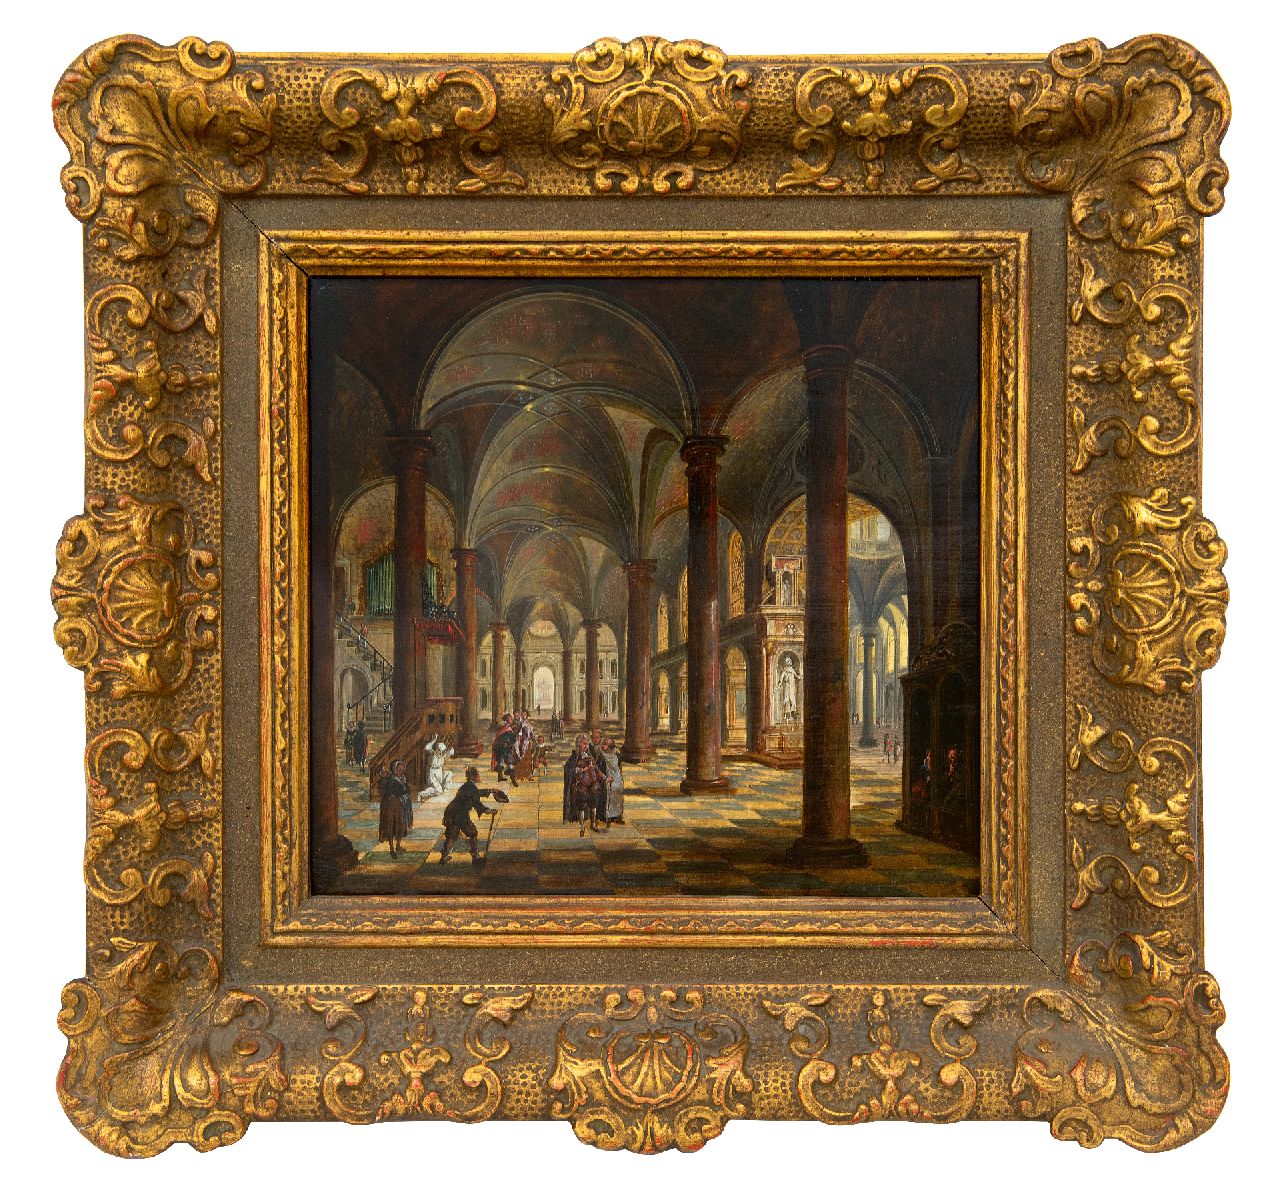 Stöcklin C.  | Christian Stöcklin | Schilderijen te koop aangeboden | Kerkinterieur met figuren, olieverf op paneel 27,5 x 30,9 cm, gesigneerd middenonder